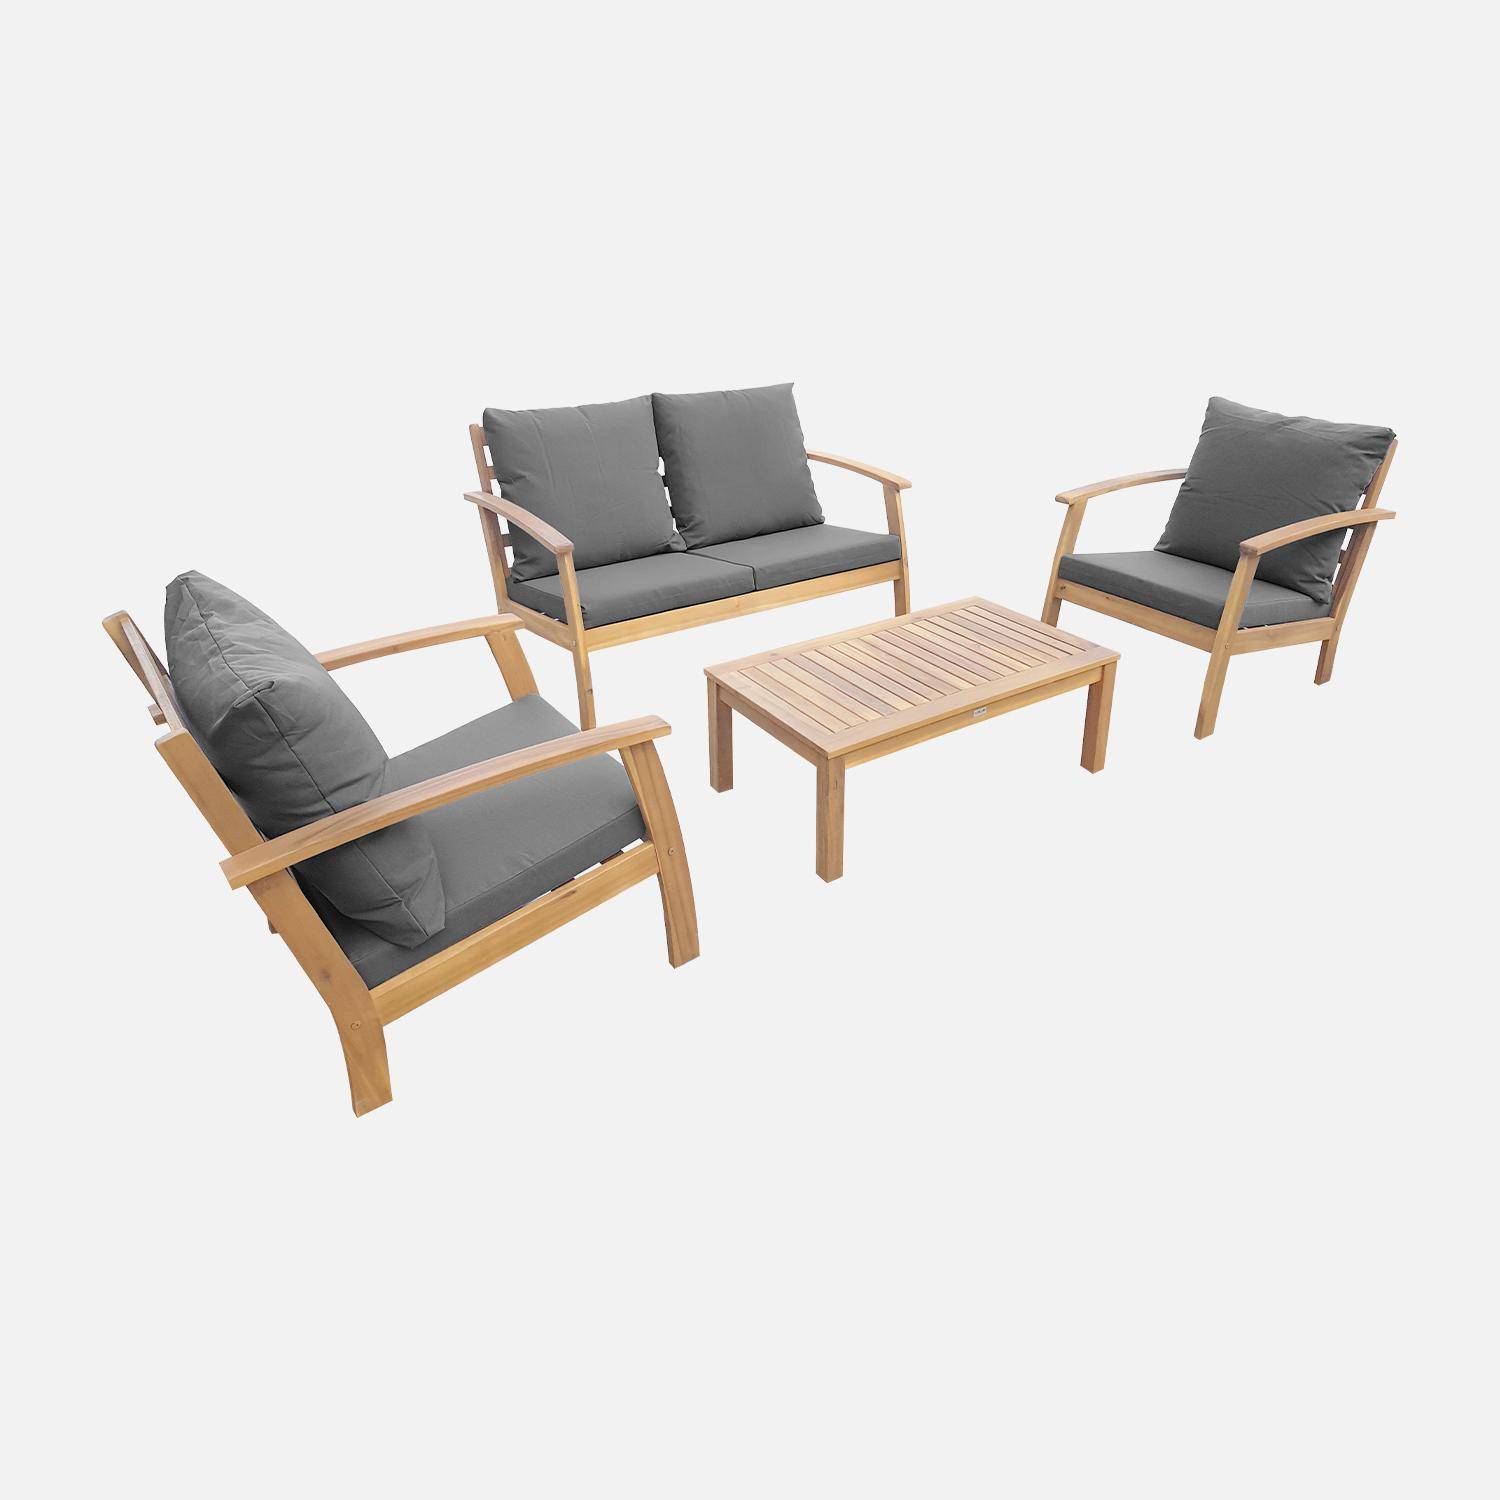 Gartengarnitur aus Holz 4 Sitze - Ushuaïa - graue Kissen, Sofa, Sessel und Couchtisch aus Akazie, Design Photo2